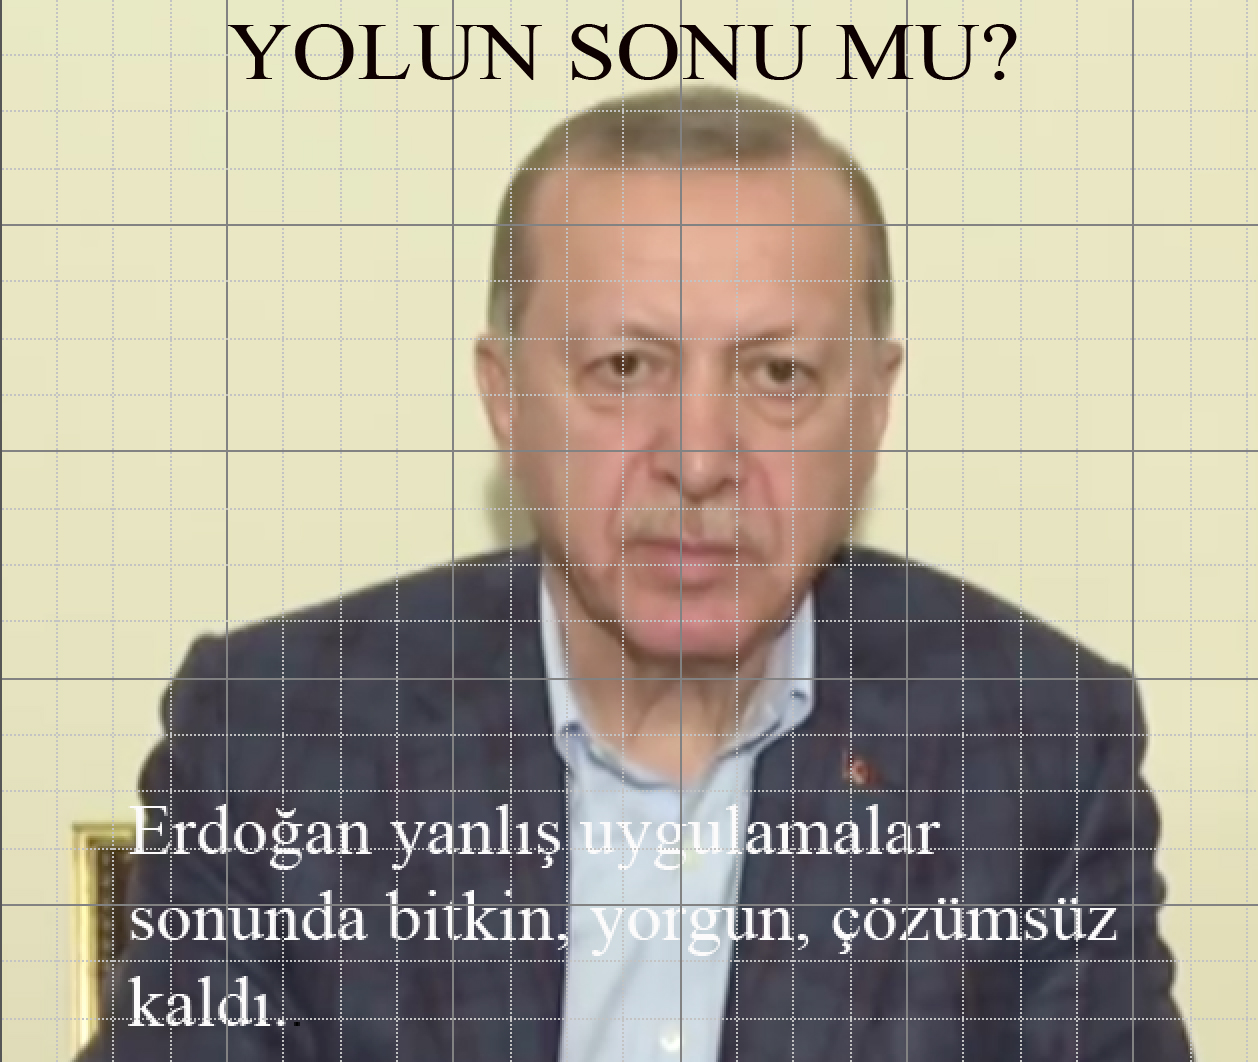 Erdoğan; yorgun, bitkin, çözümsüz!